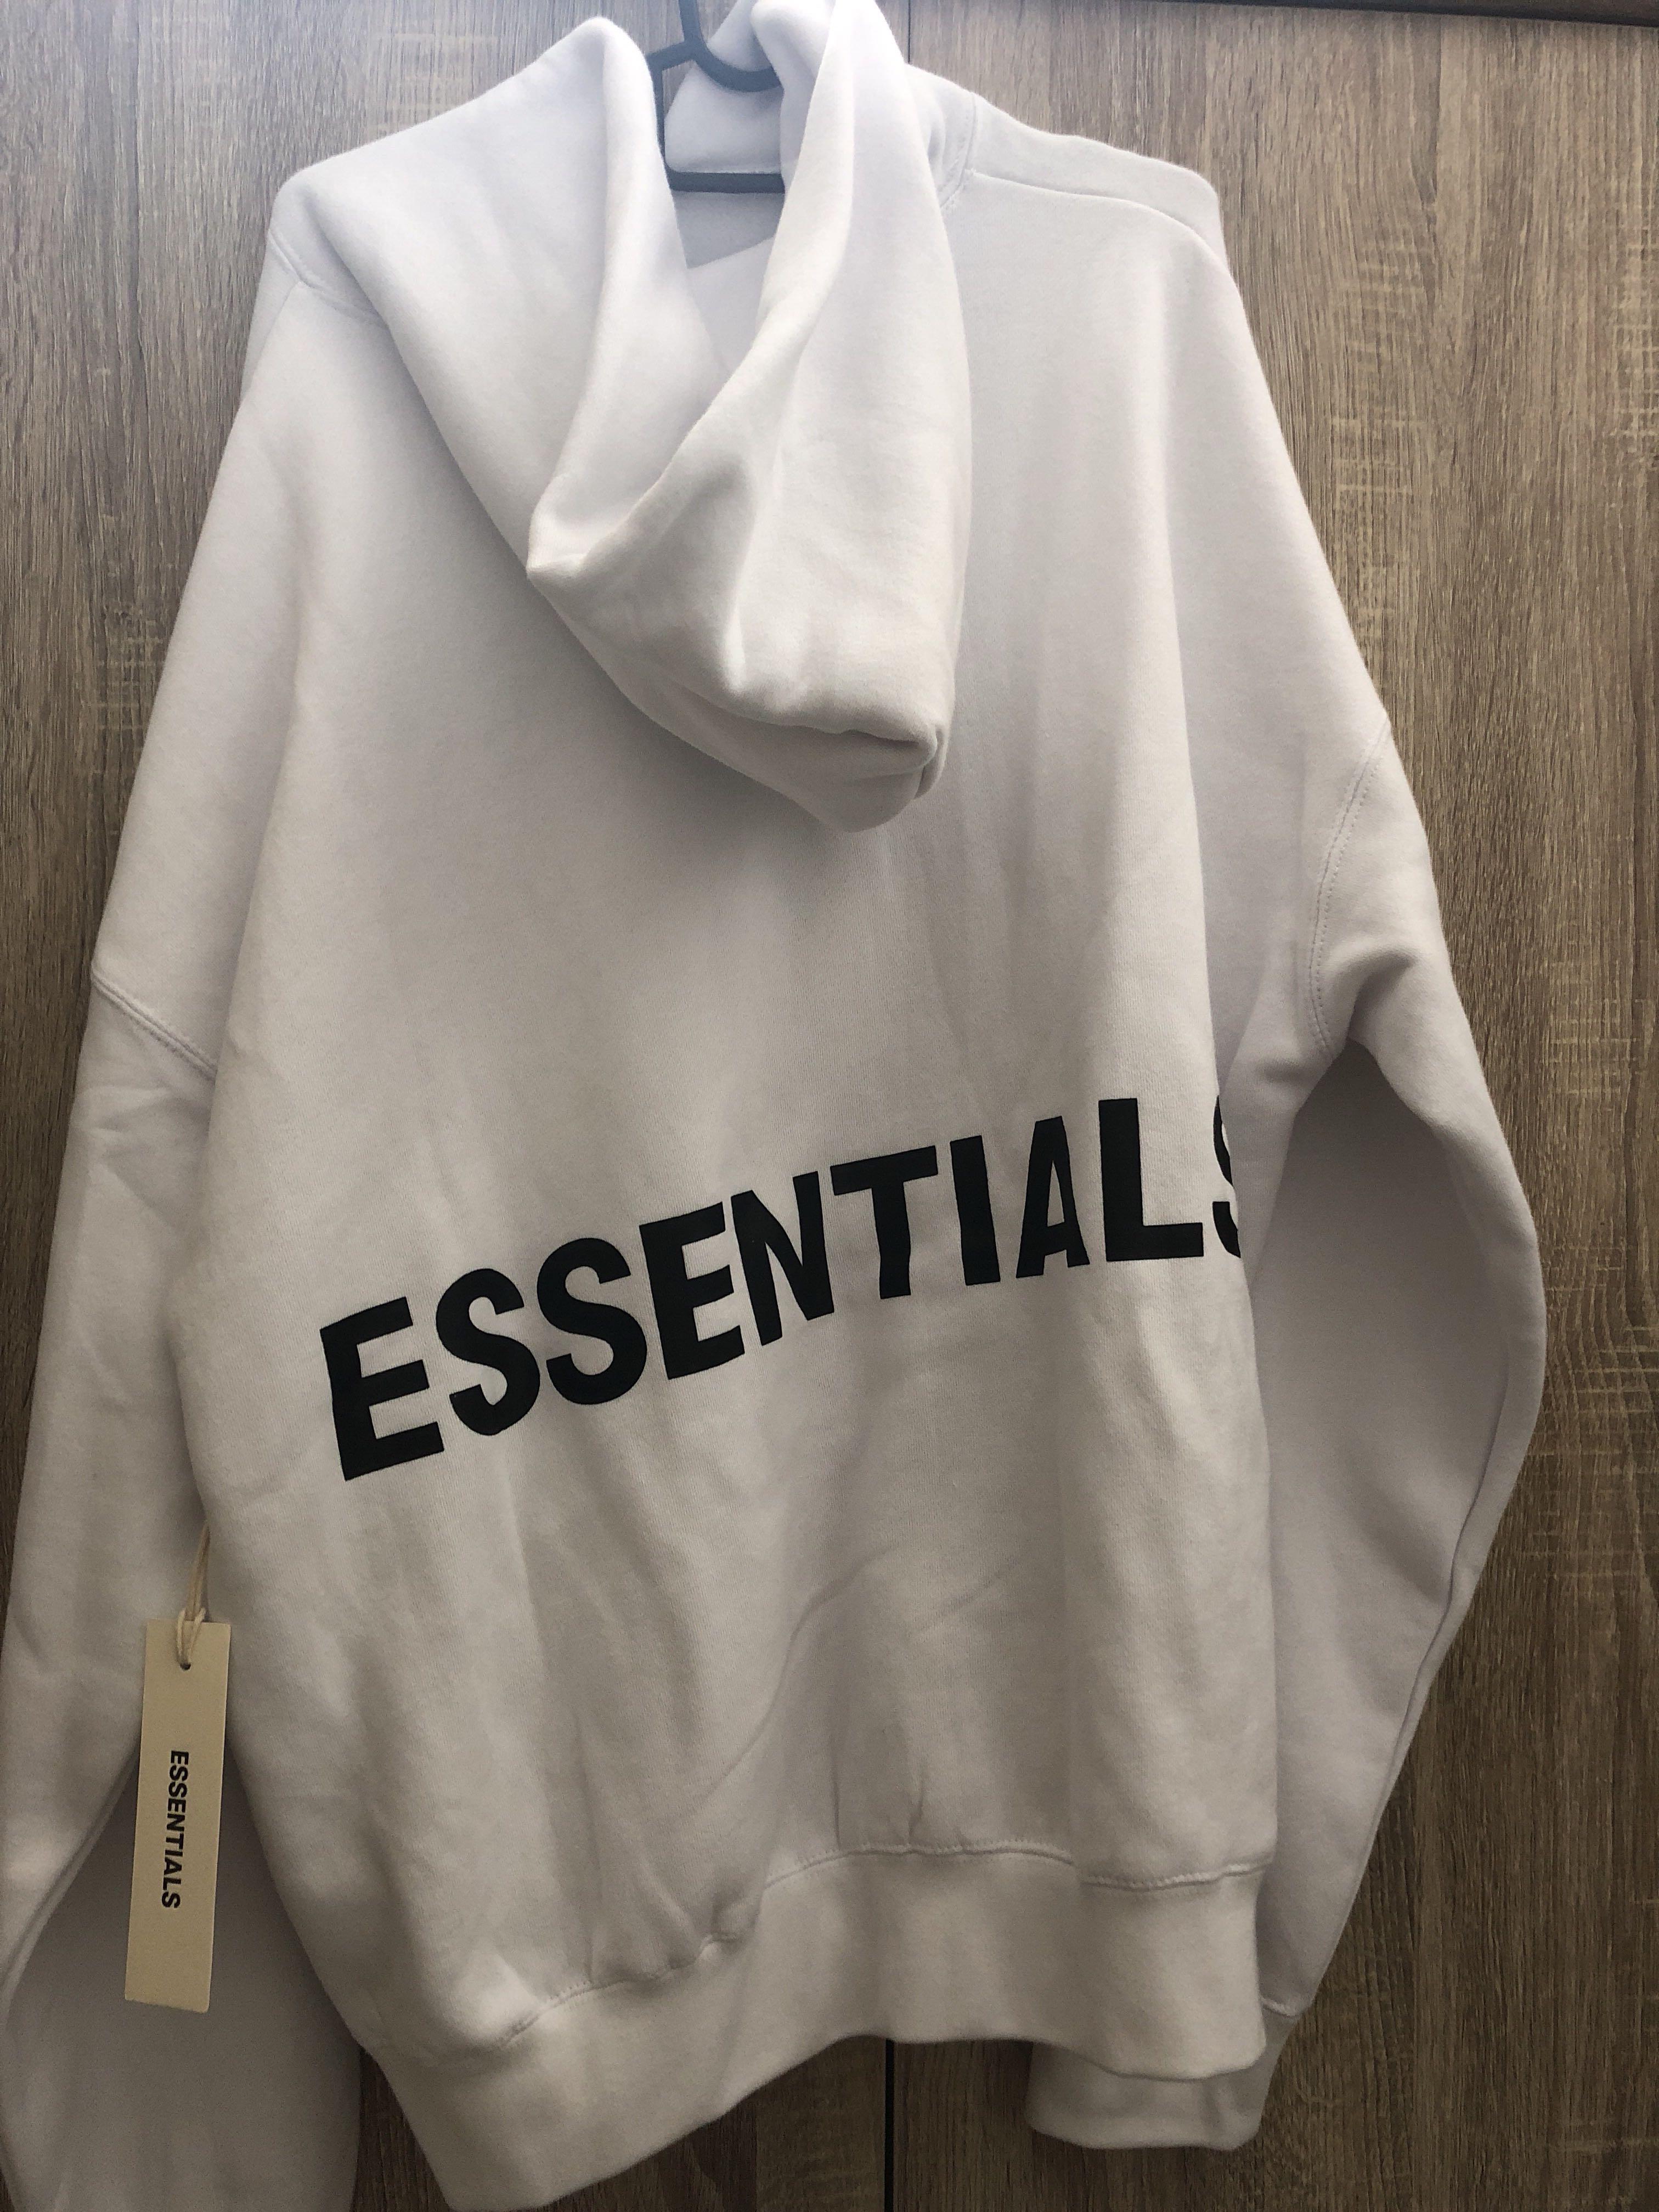 essentials white hoodie